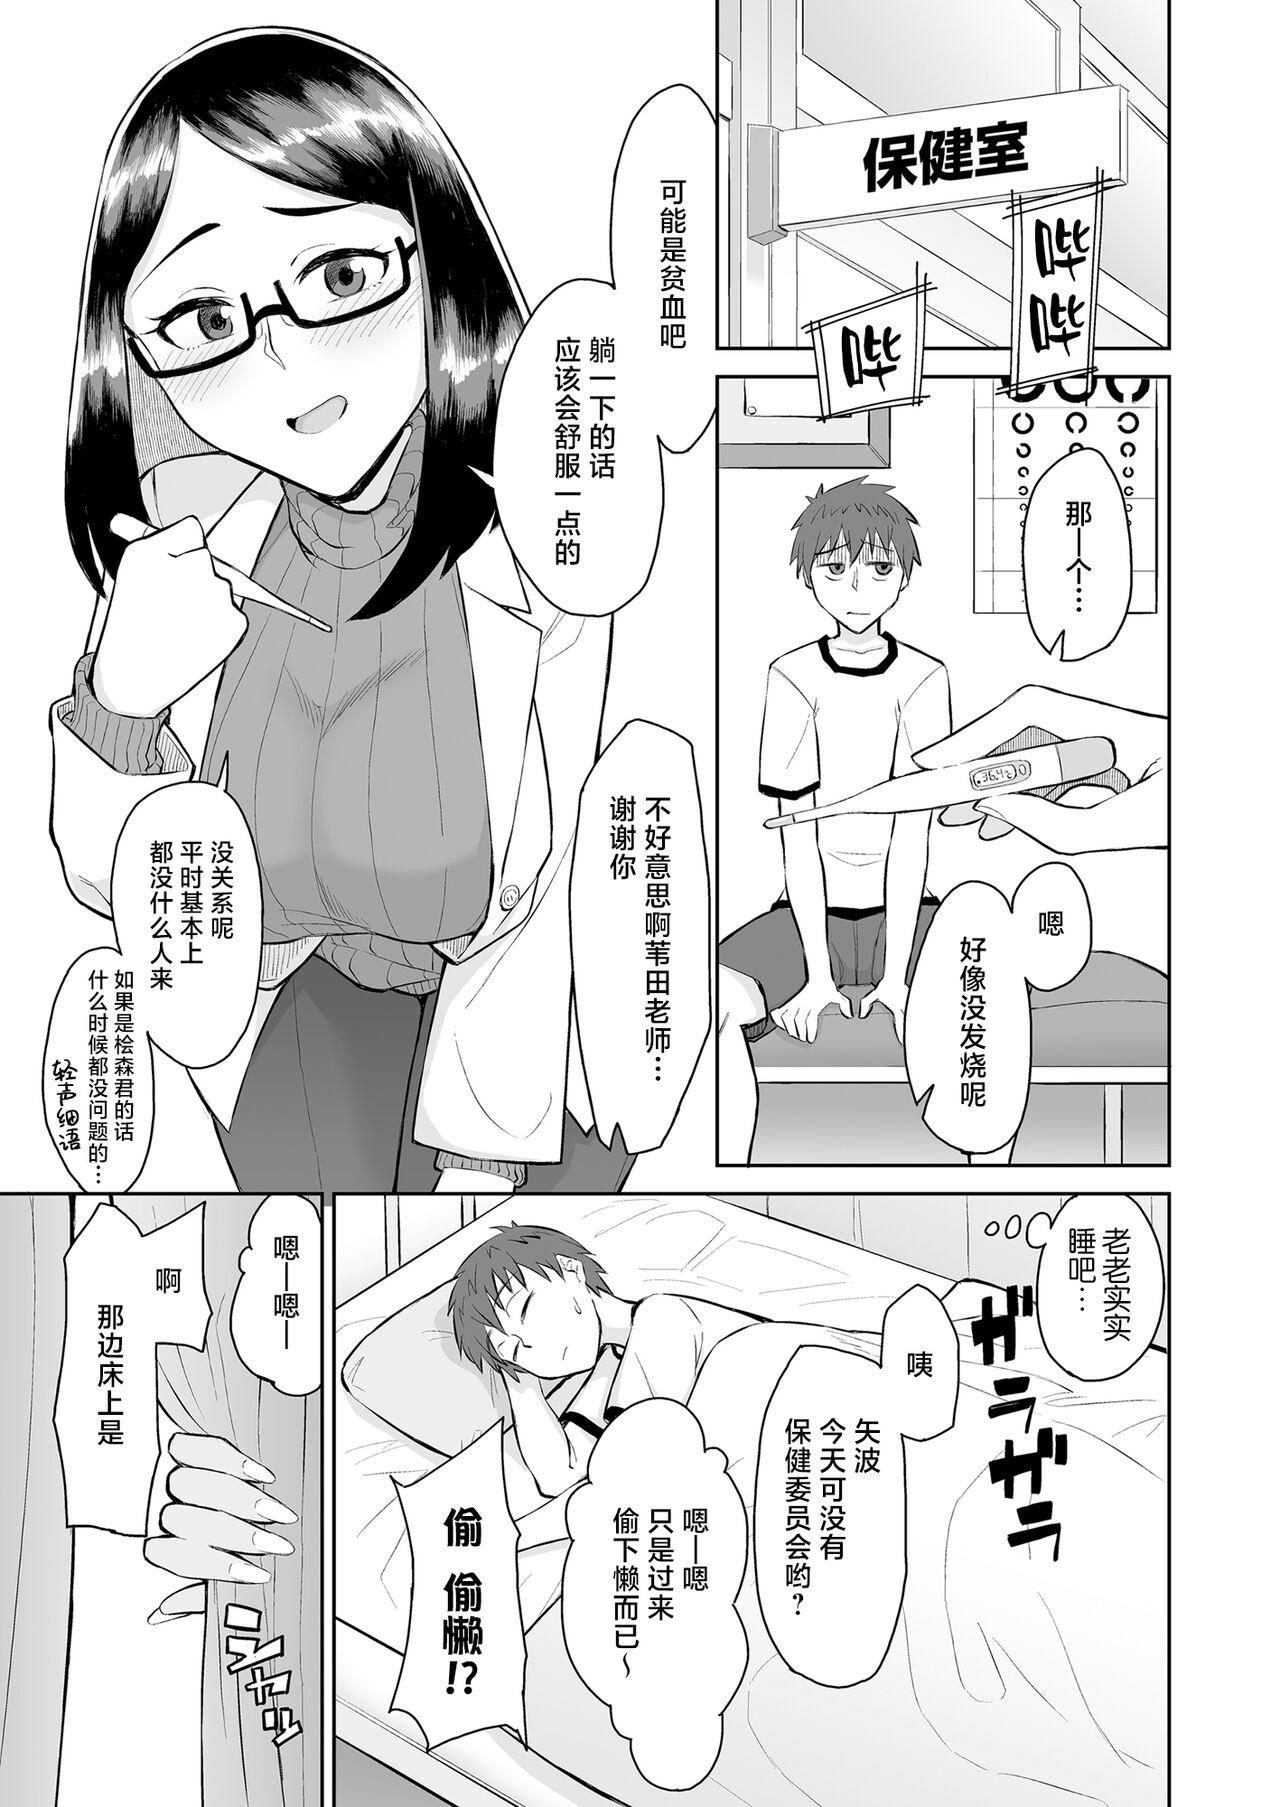 Gordibuena Bitch Gyaru to Shojo Sensei ni hoken-shitsu de shiboritora reru. - Original Bitch - Page 3